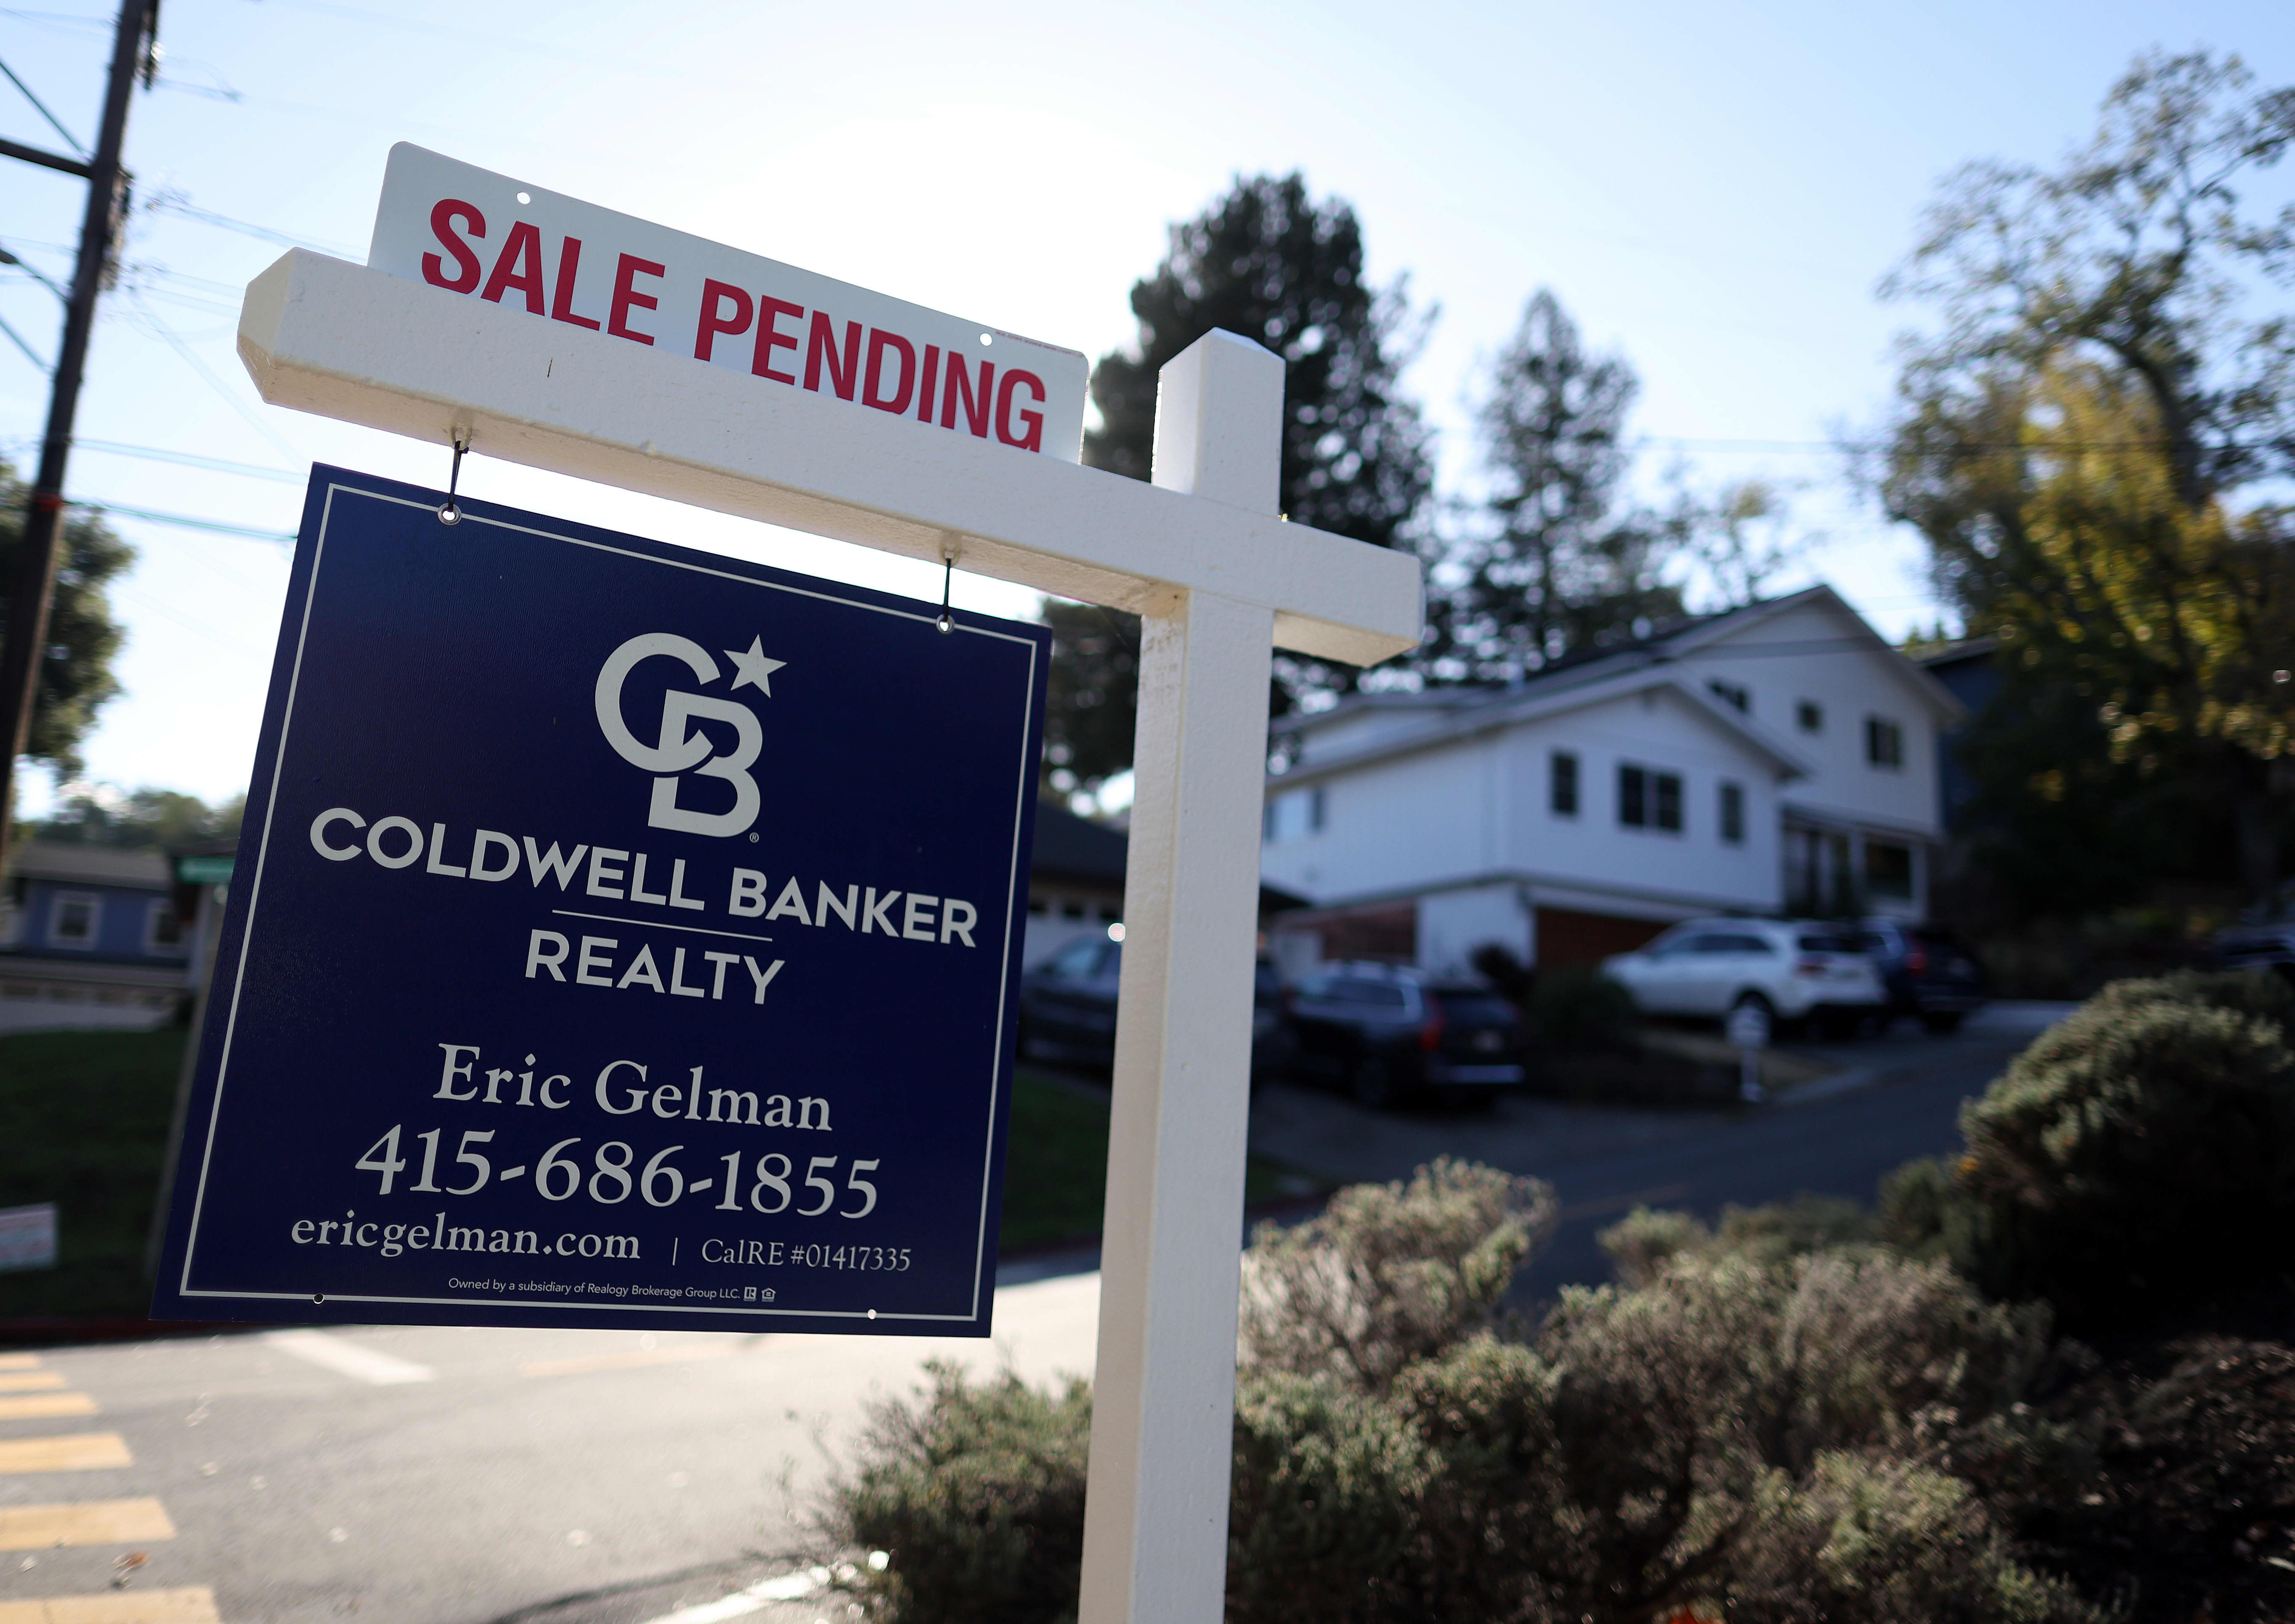 As vendas pendentes de casas em novembro permaneceram inalteradas, apesar das taxas hipotecárias mais baixas